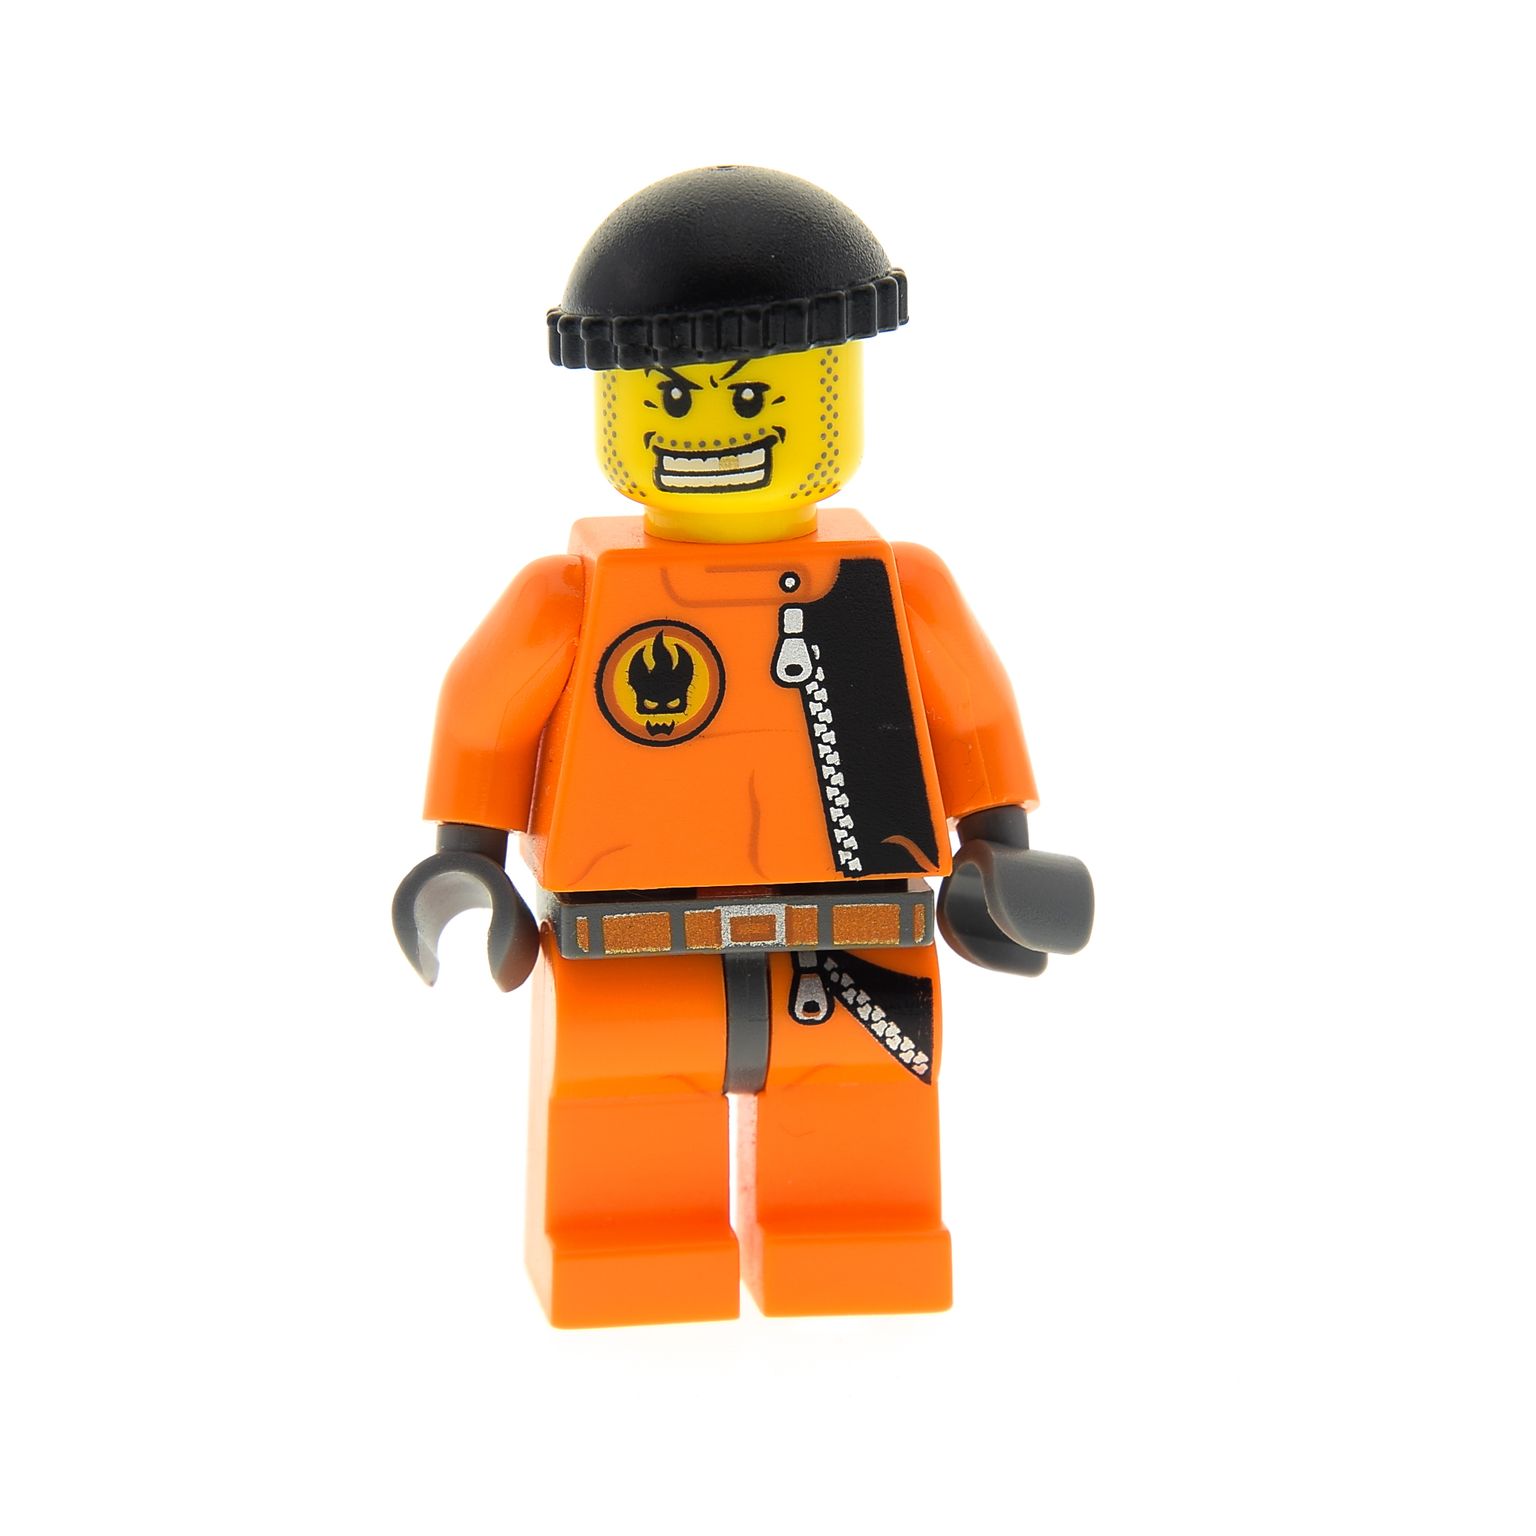 1x Lego Figur Mann Agents Henchman Handlanger orange Grinsen 8630 8634 agt008 